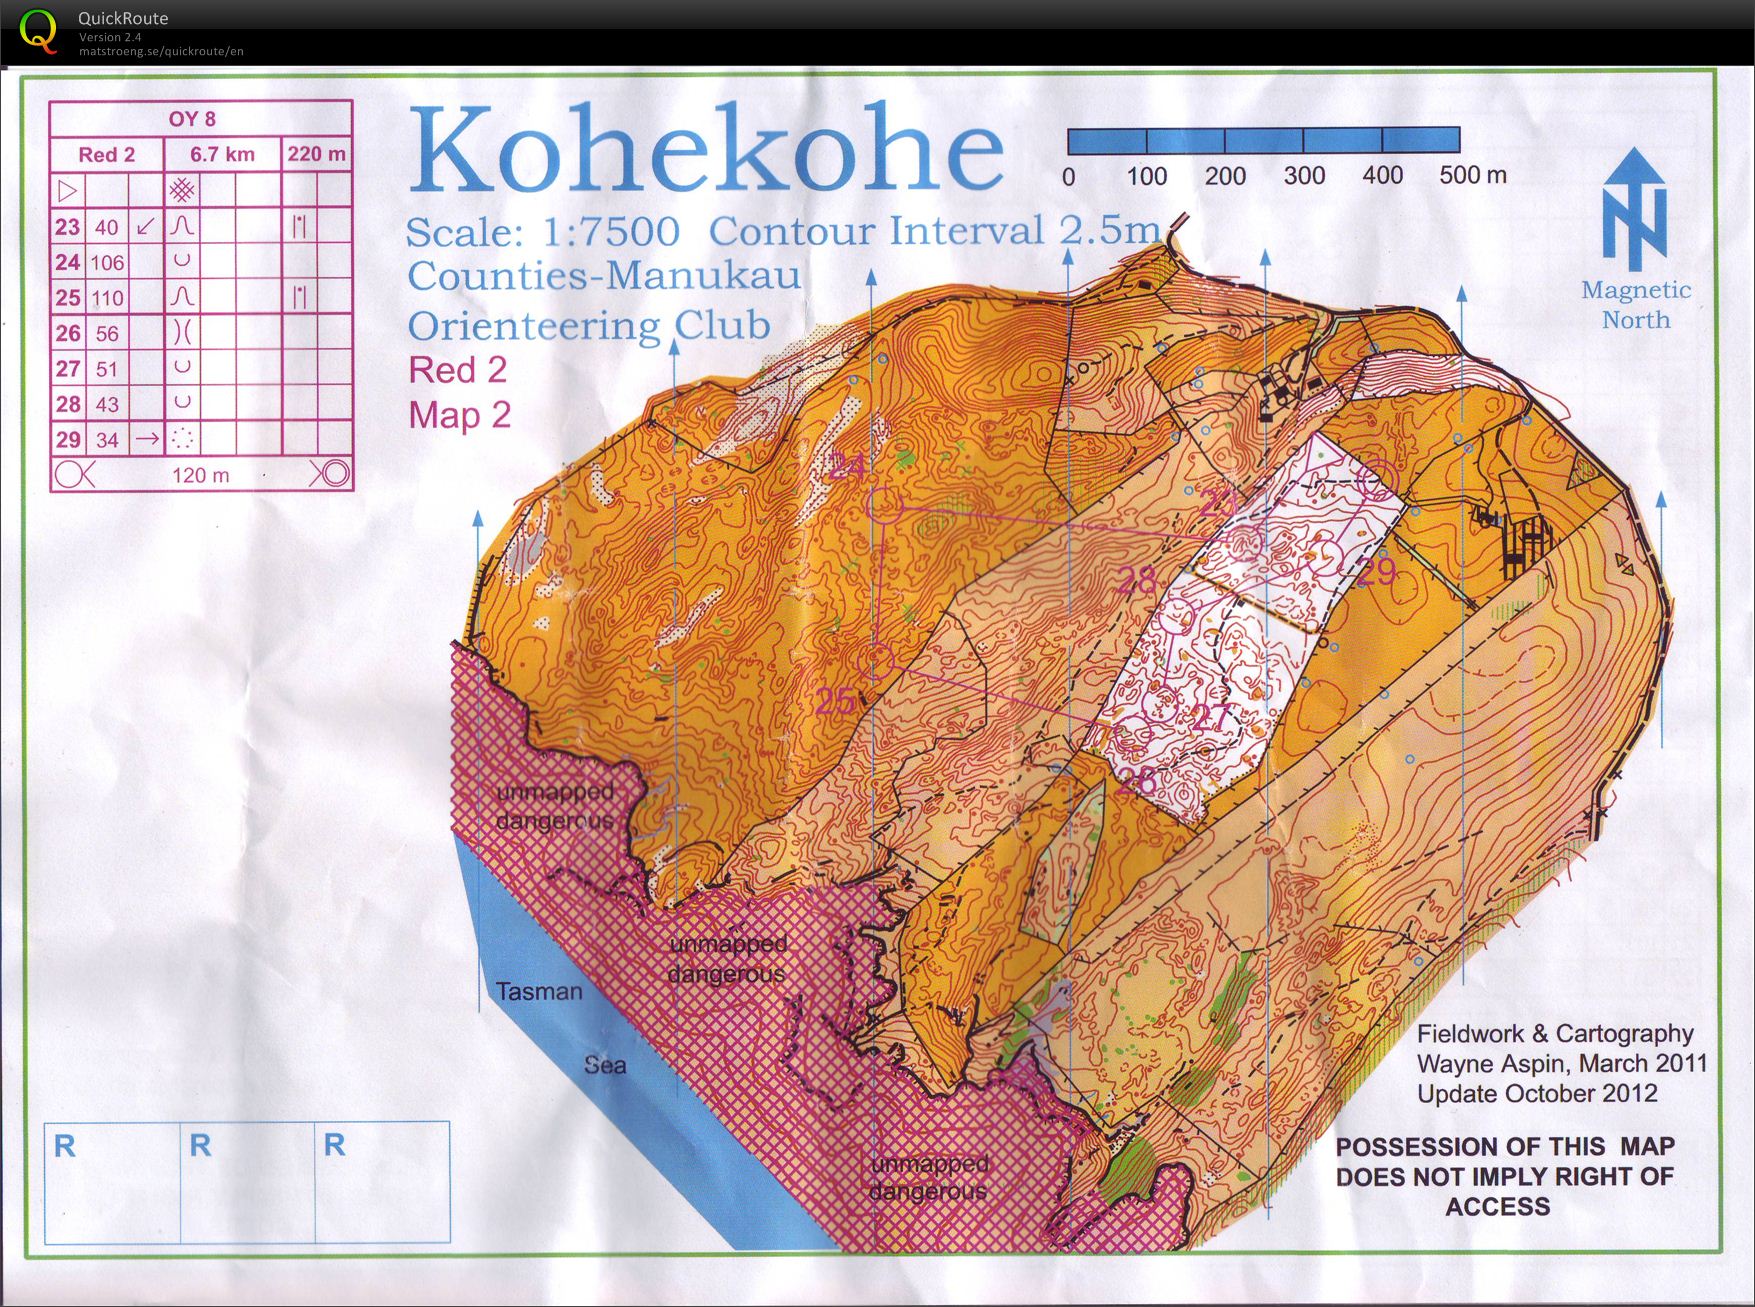 OY8 Kohekohe (part 2) (27/10/2012)